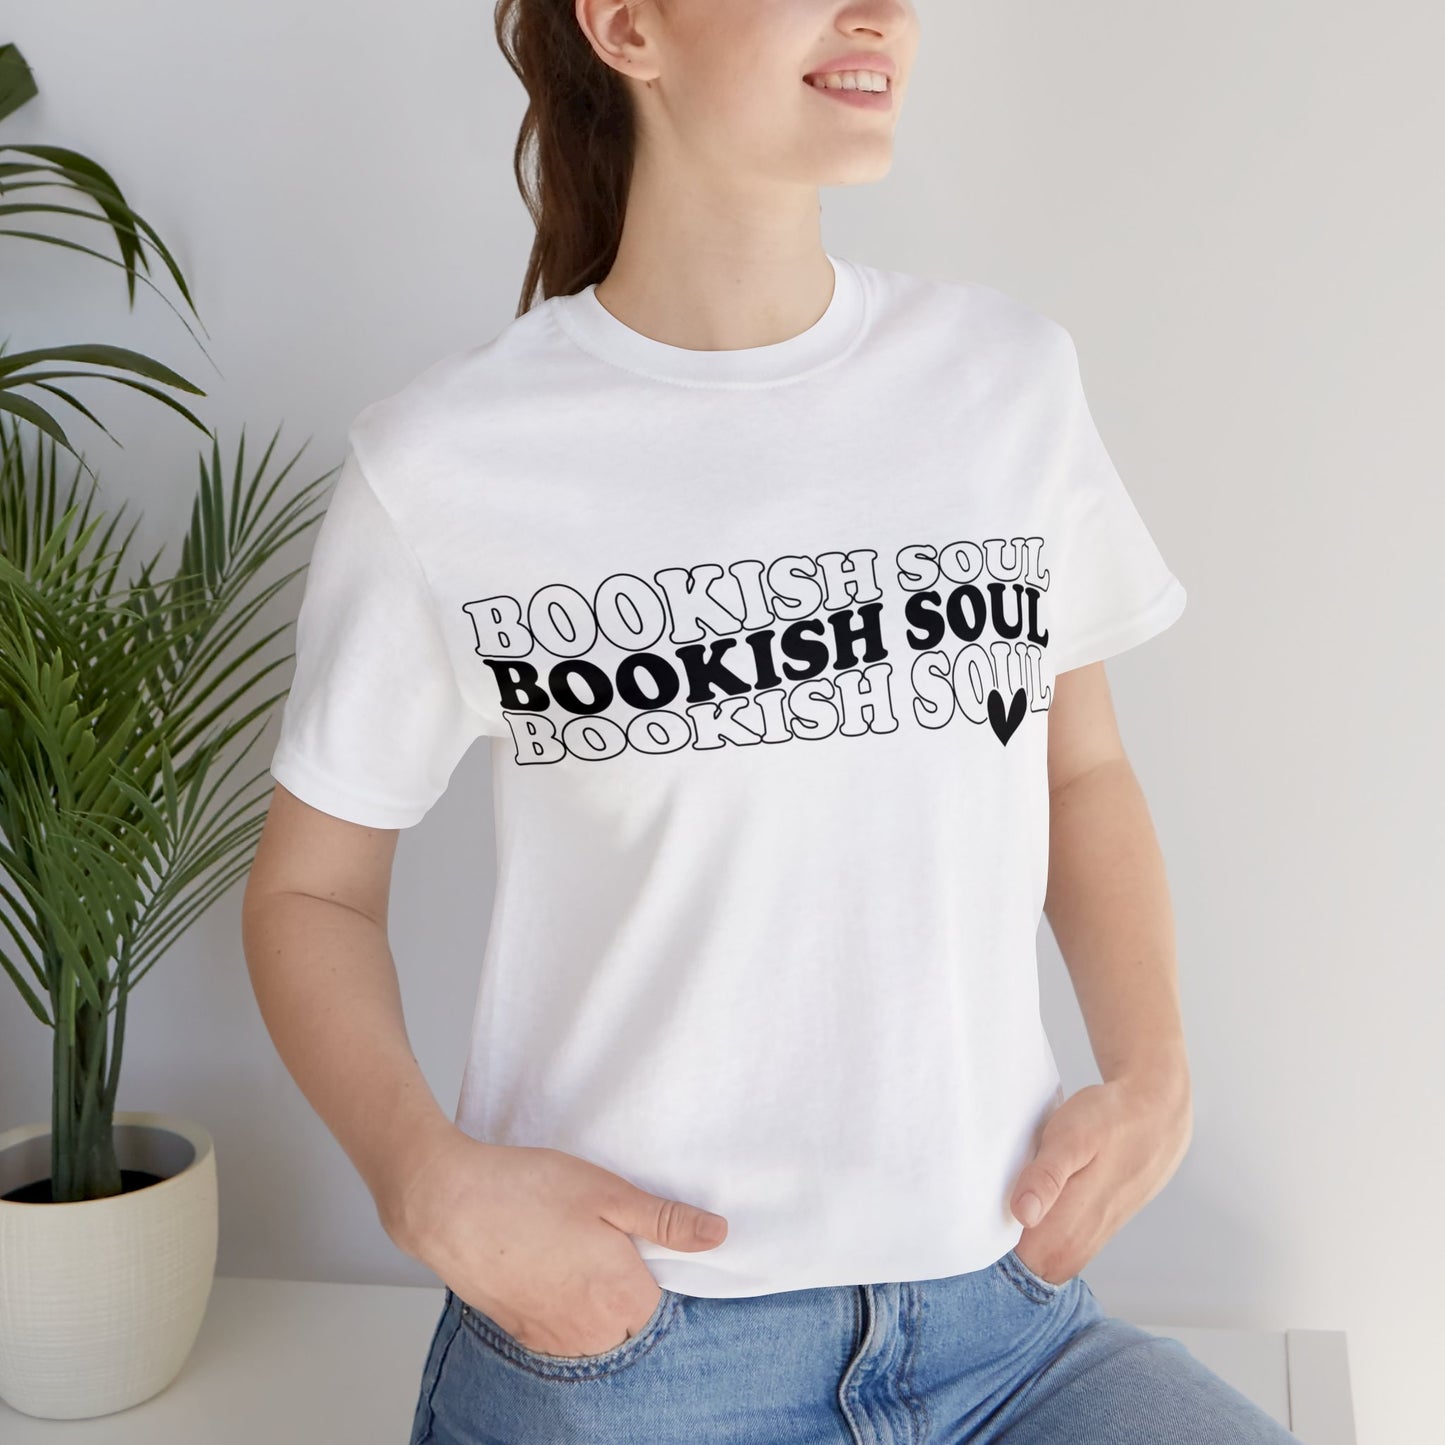 Bookish Soul Tee